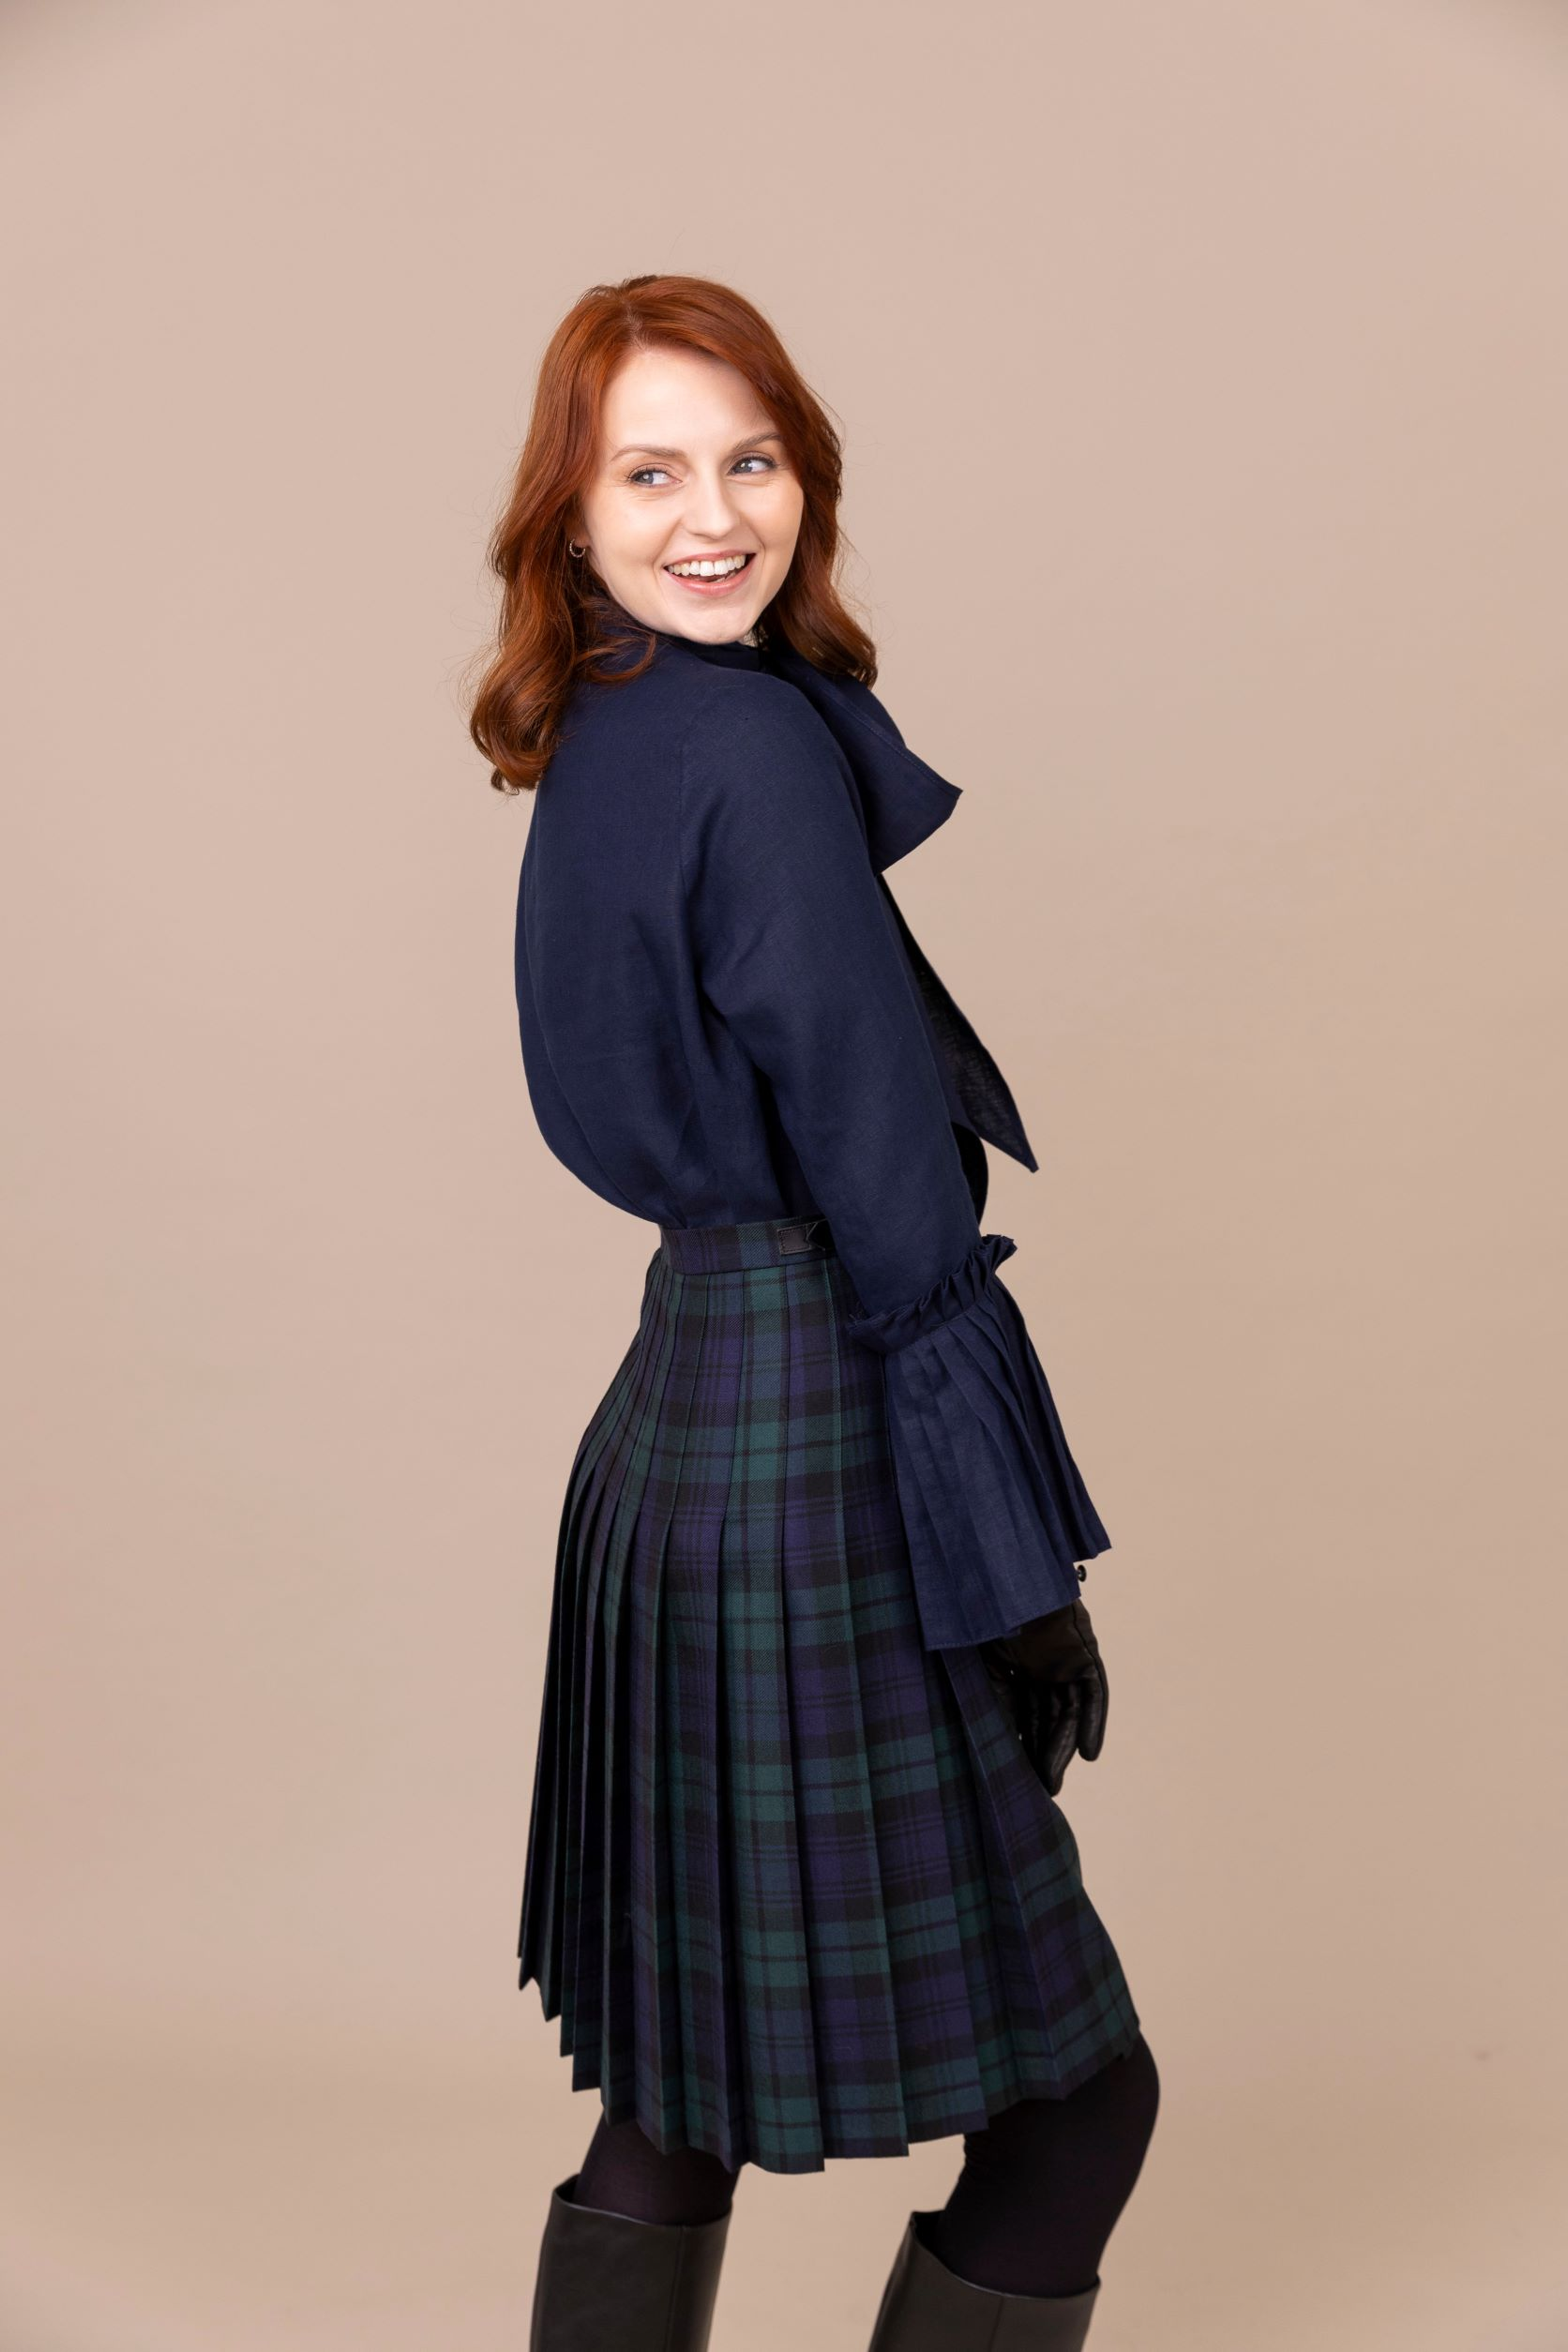 Women’s Long Kilts Skirt | Ladies Kilt for Sale – O'Neil of Dublin